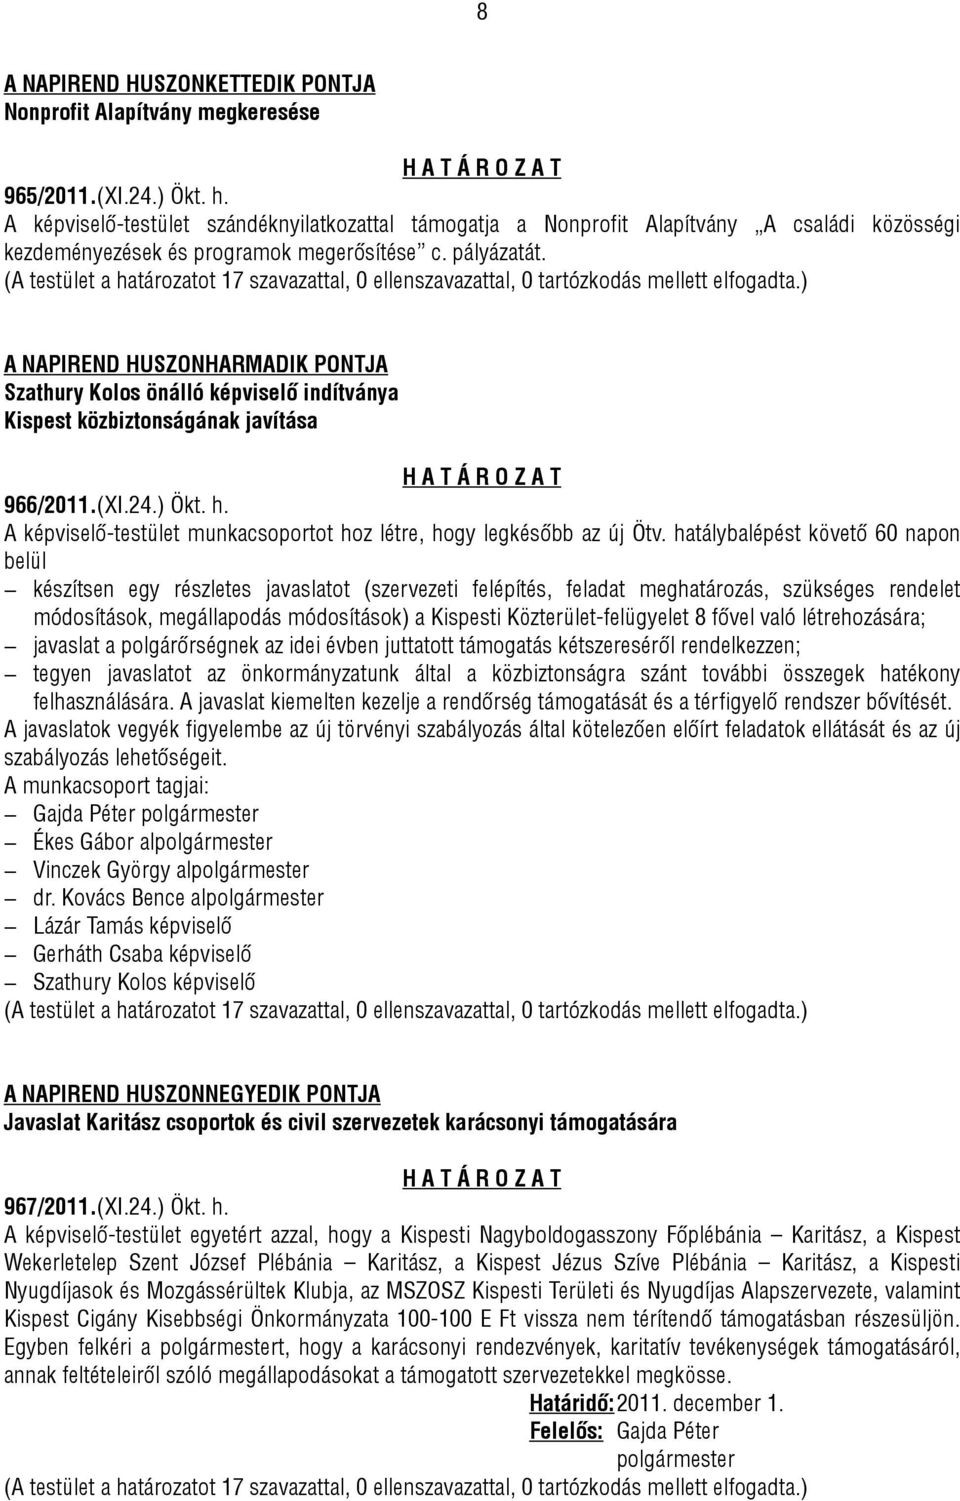 A NAPIREND HUSZONHARMADIK PONTJA Szathury Kolos önálló képviselő indítványa Kispest közbiztonságának javítása 966/2011.(XI.24.) Ökt. h.